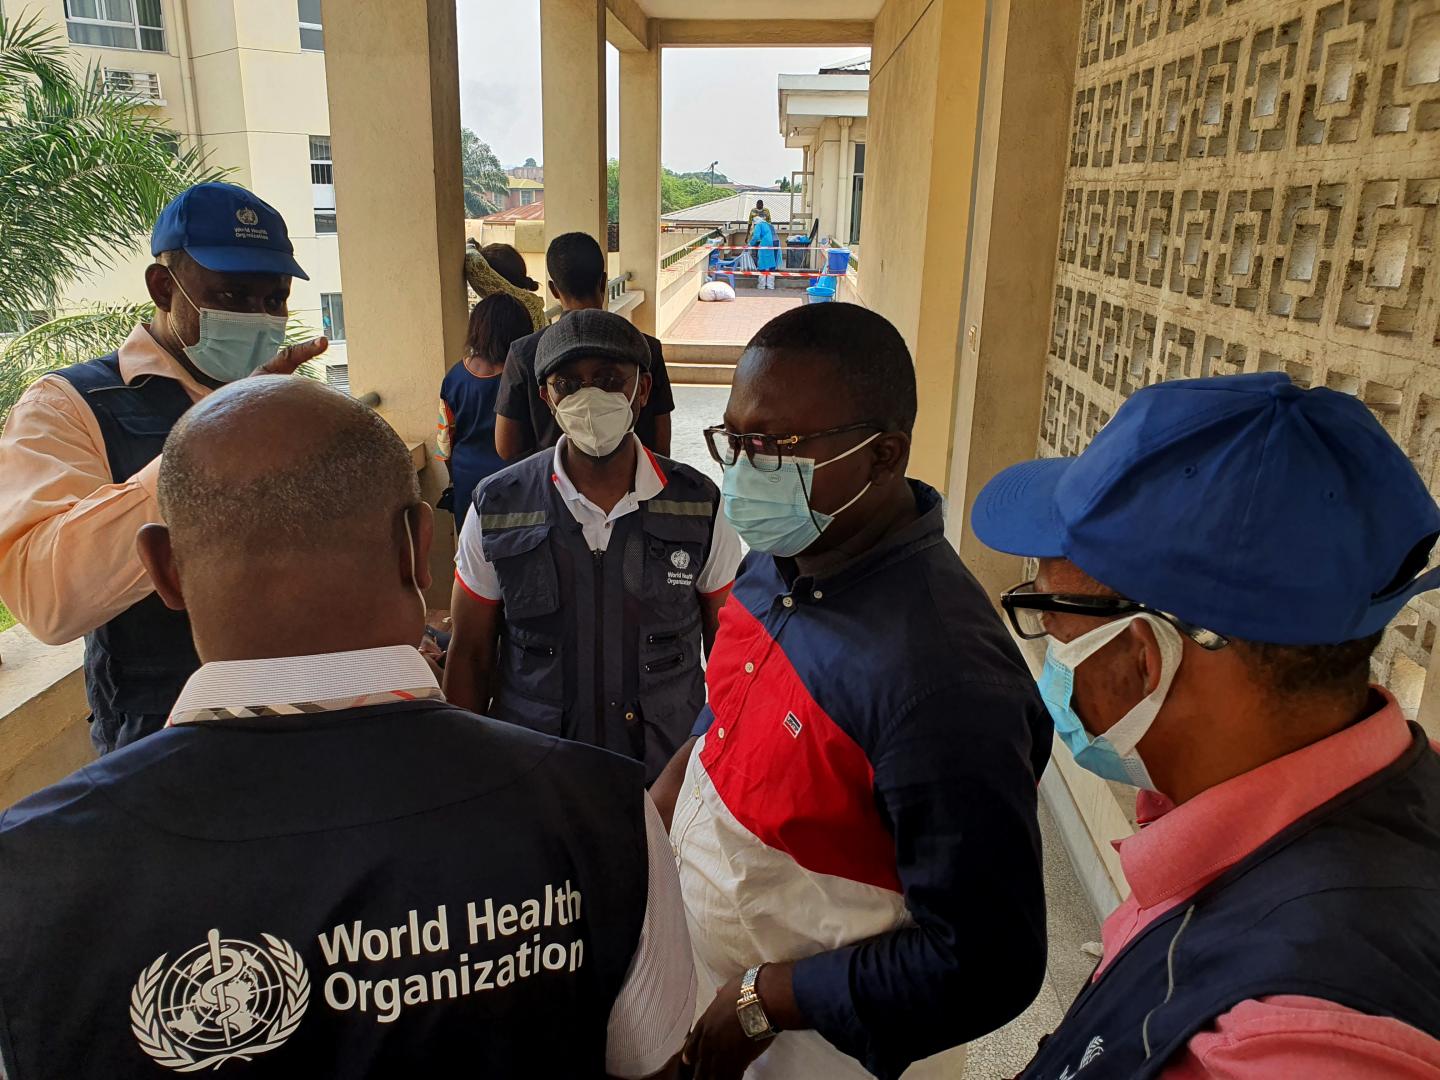 Vue partielle d'un centre de traitement des patients atteints de COVID-19 de l'hôpital de l'amitié sino-congolaise lors de la visite des urgentistes de l'OMS